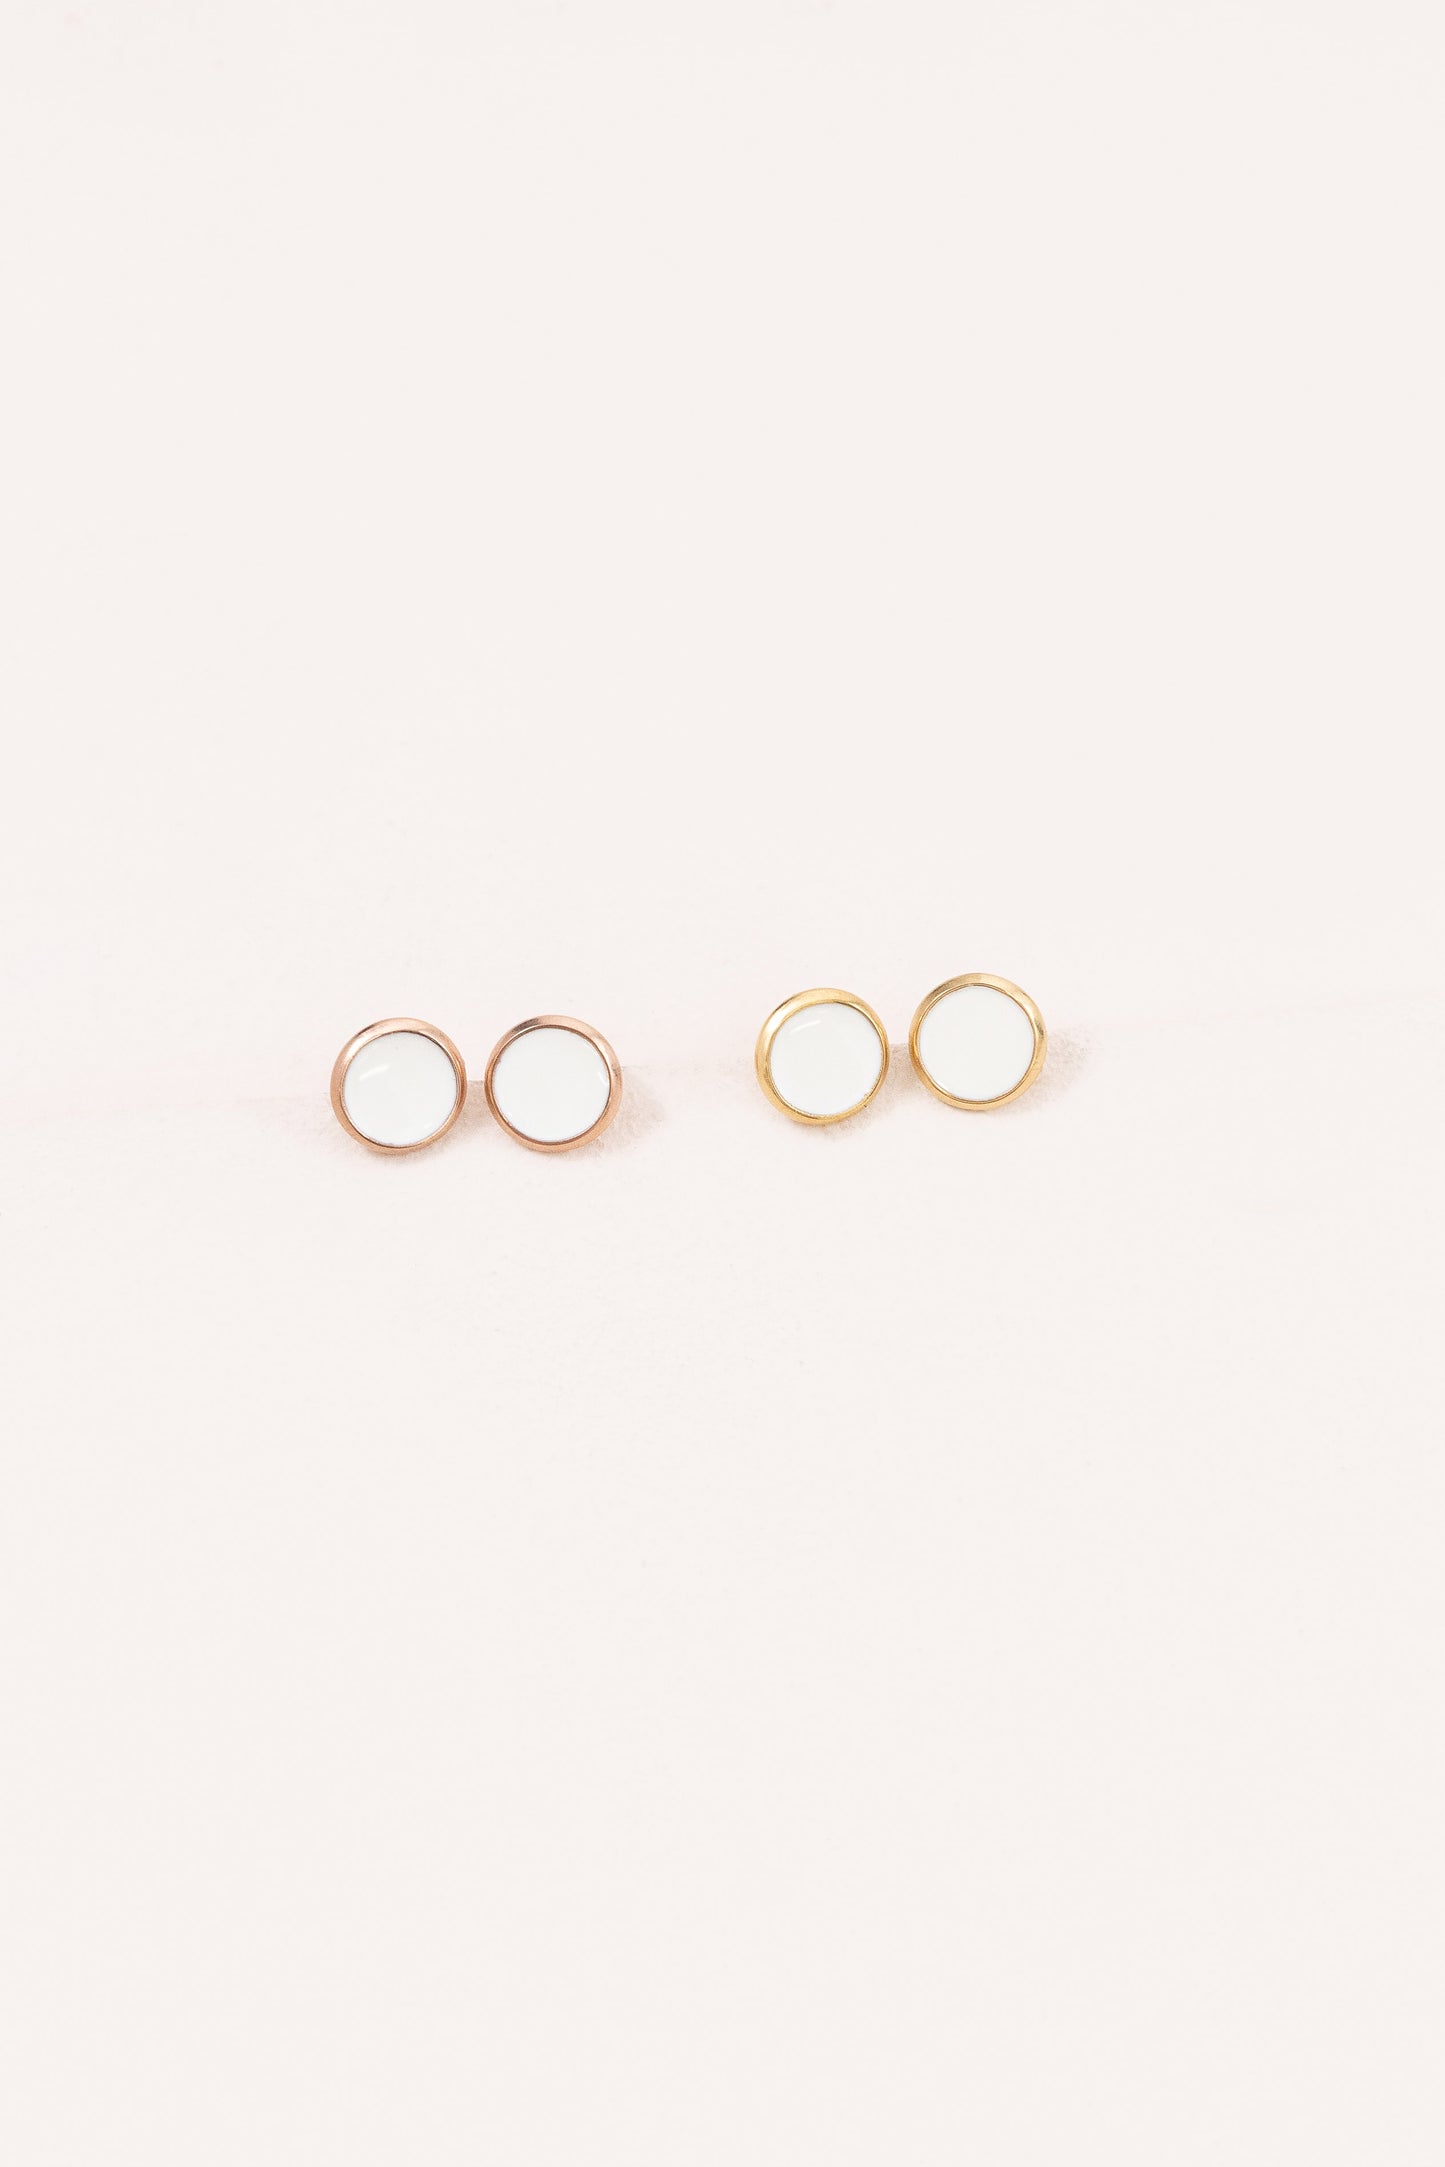 10mm Palette Earrings | White (14K)